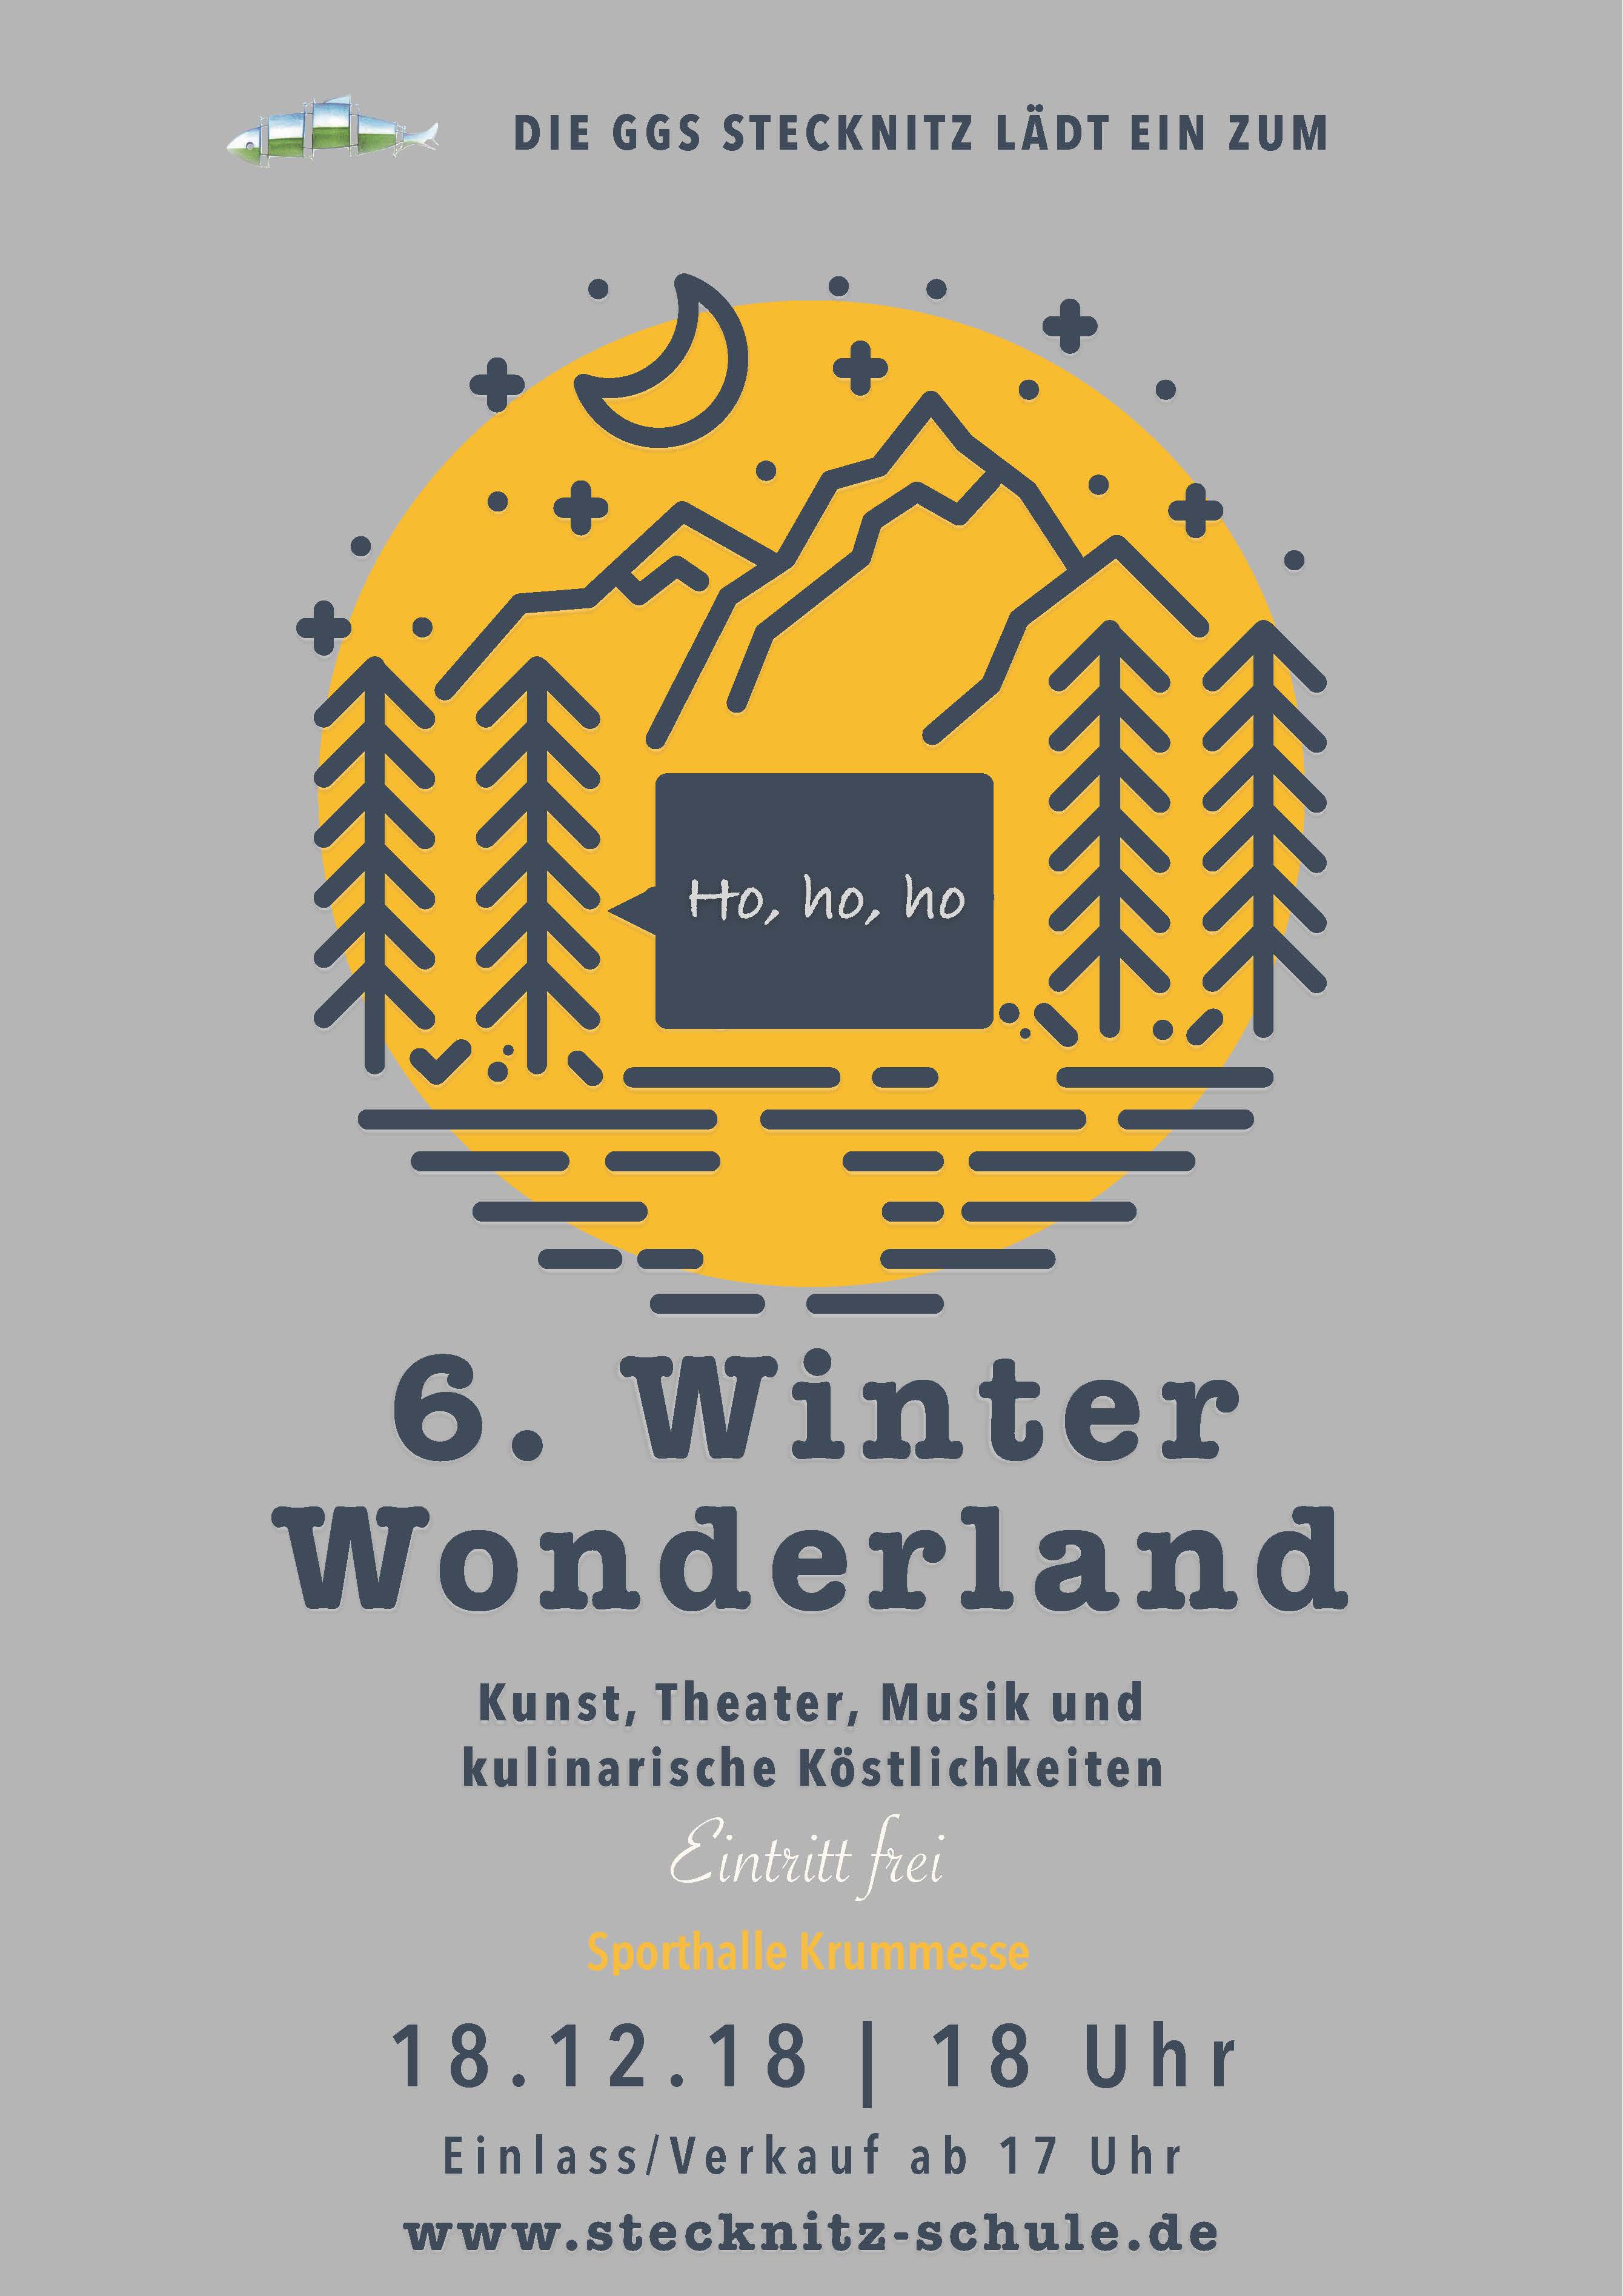 Die Grund- Und Gemeinschaftsschule Stecknitz Feiert Ihr 6. Winter Wonderland